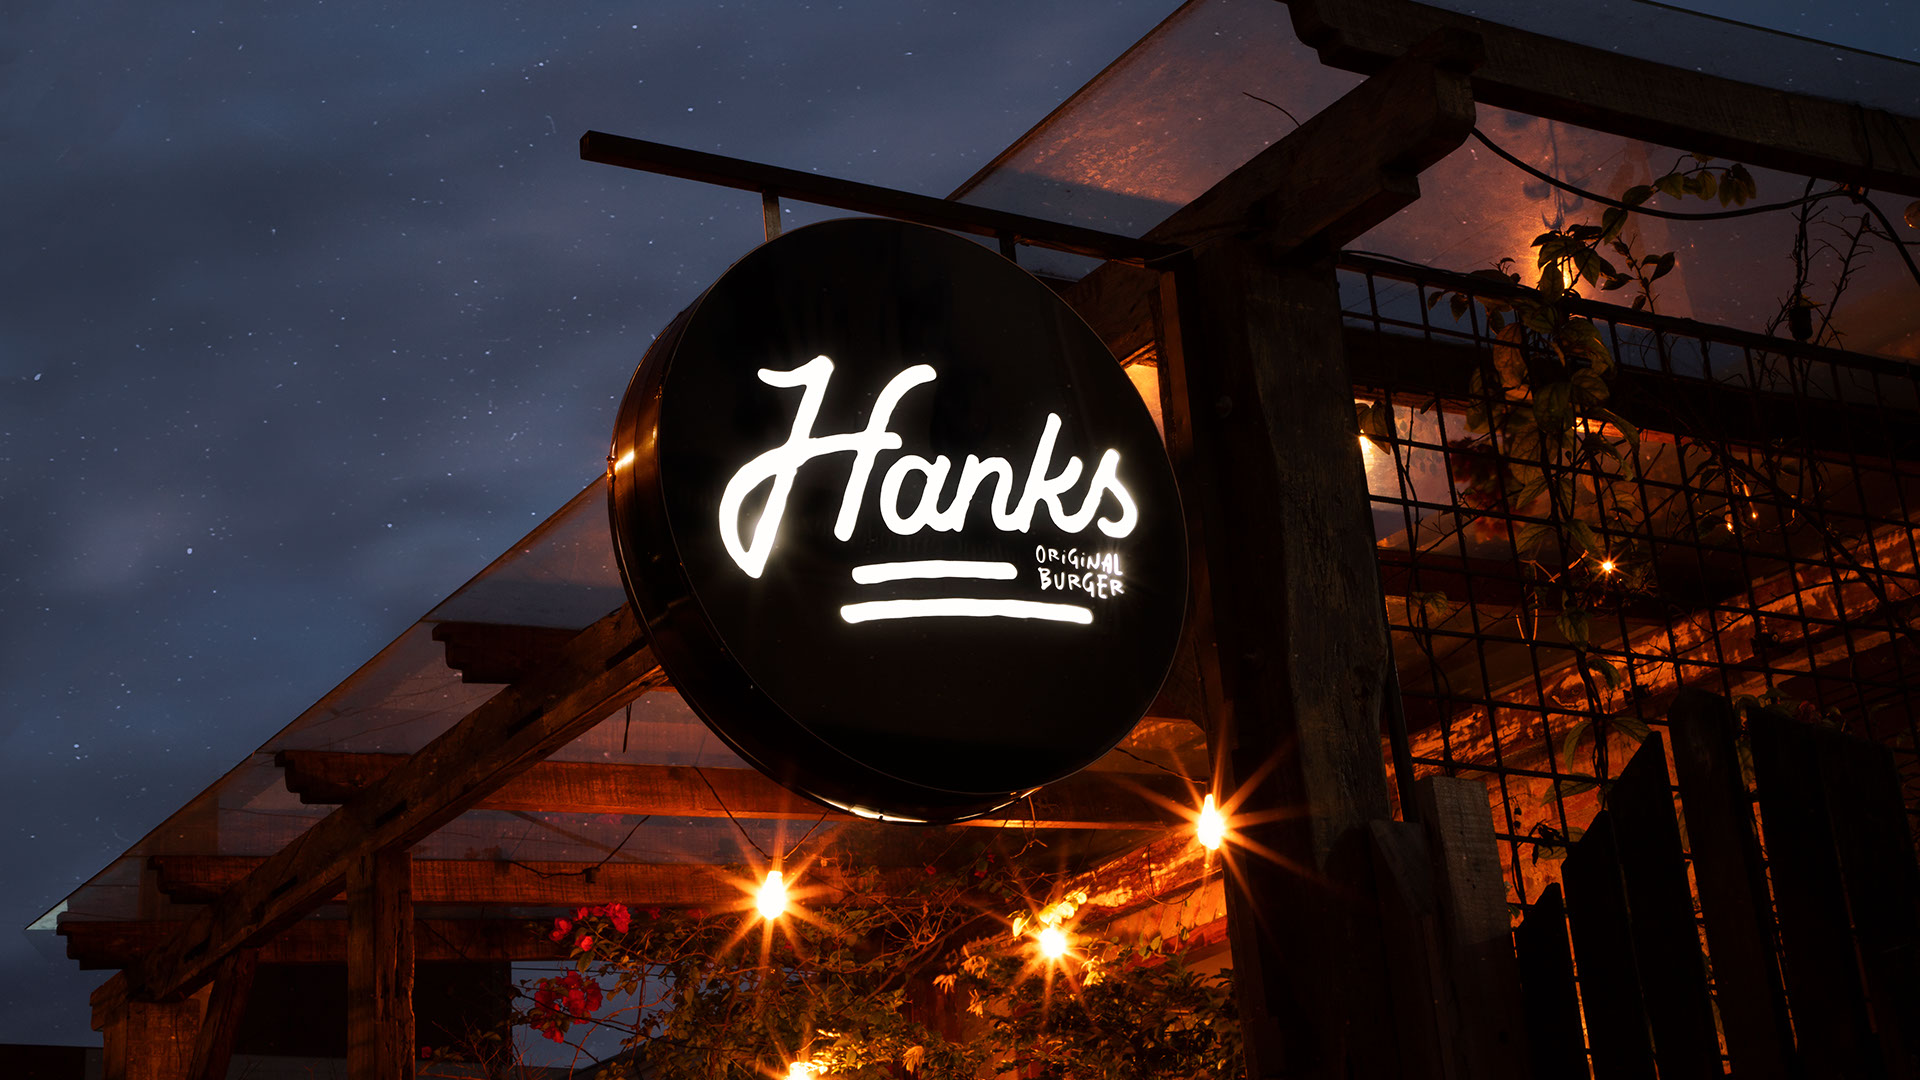 Hanks Original Burger by Feitoria